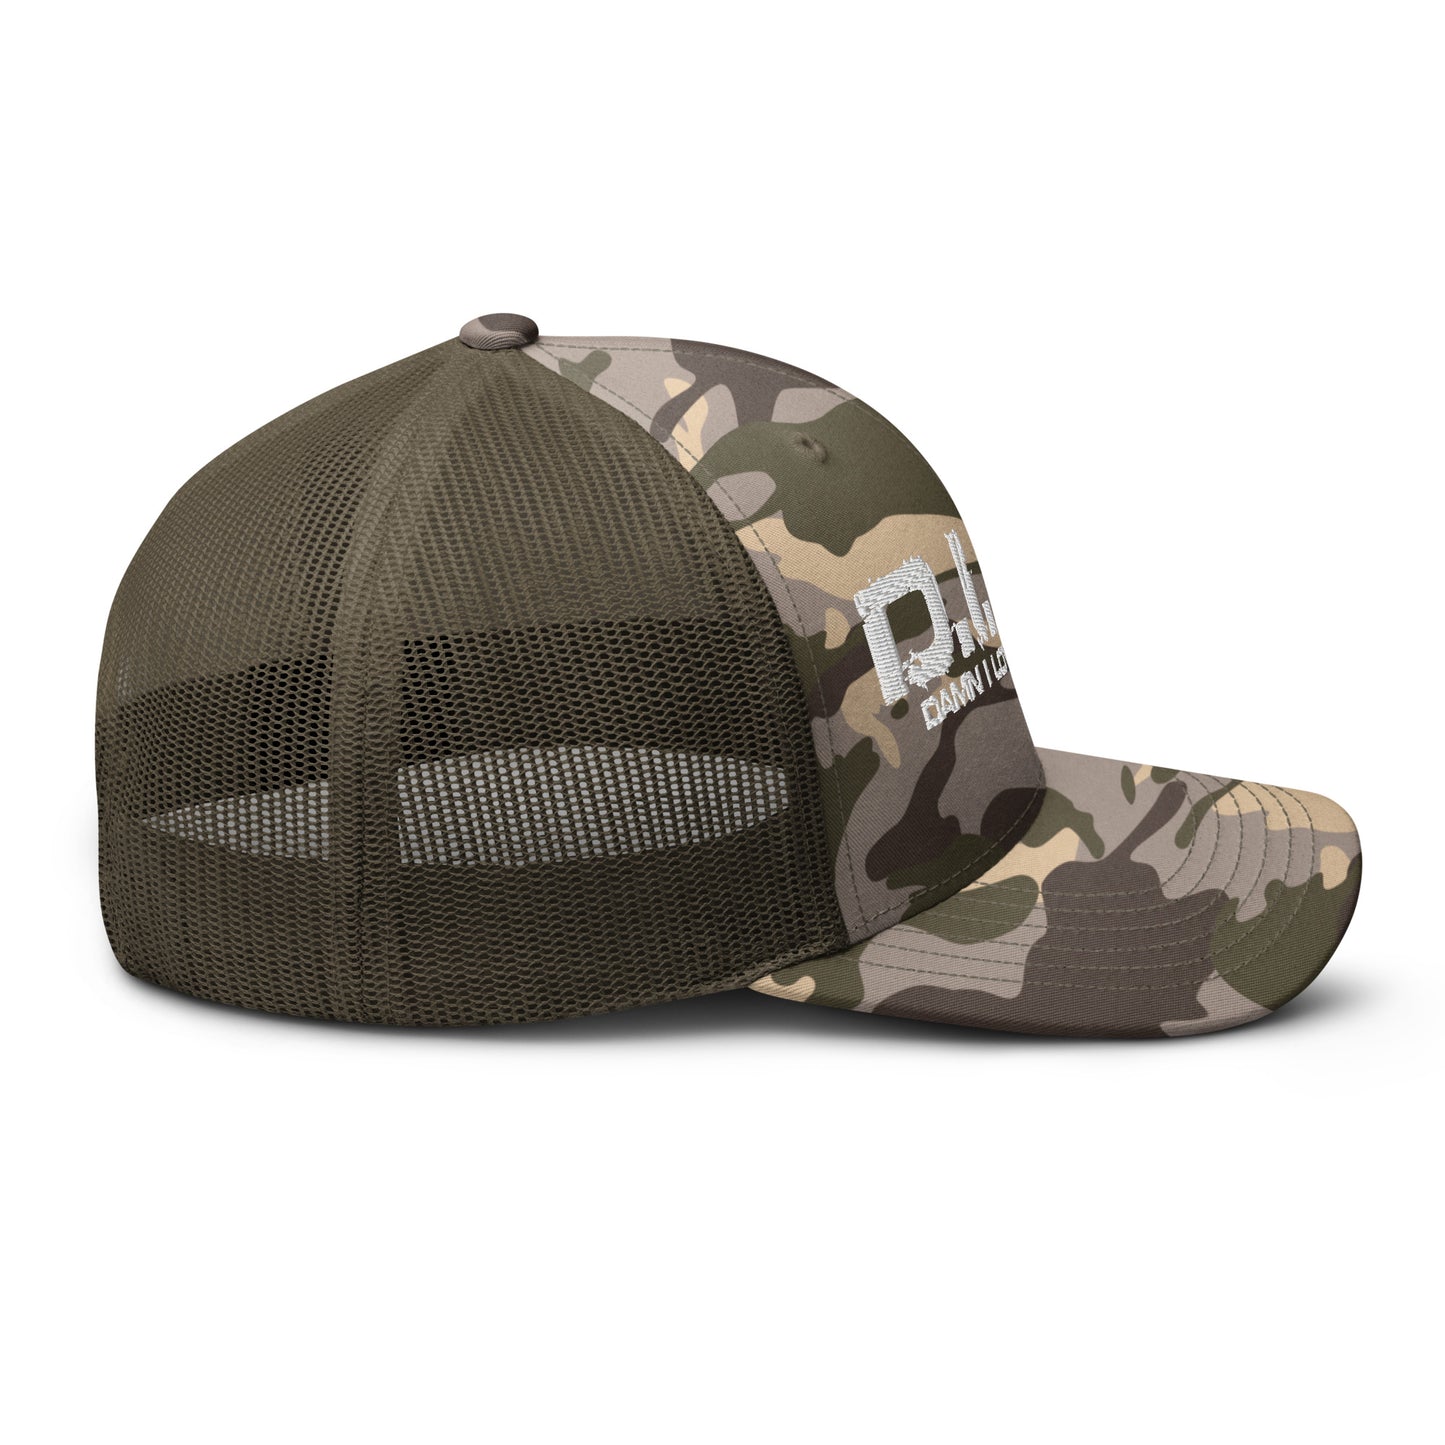 DILF Camouflage trucker hat